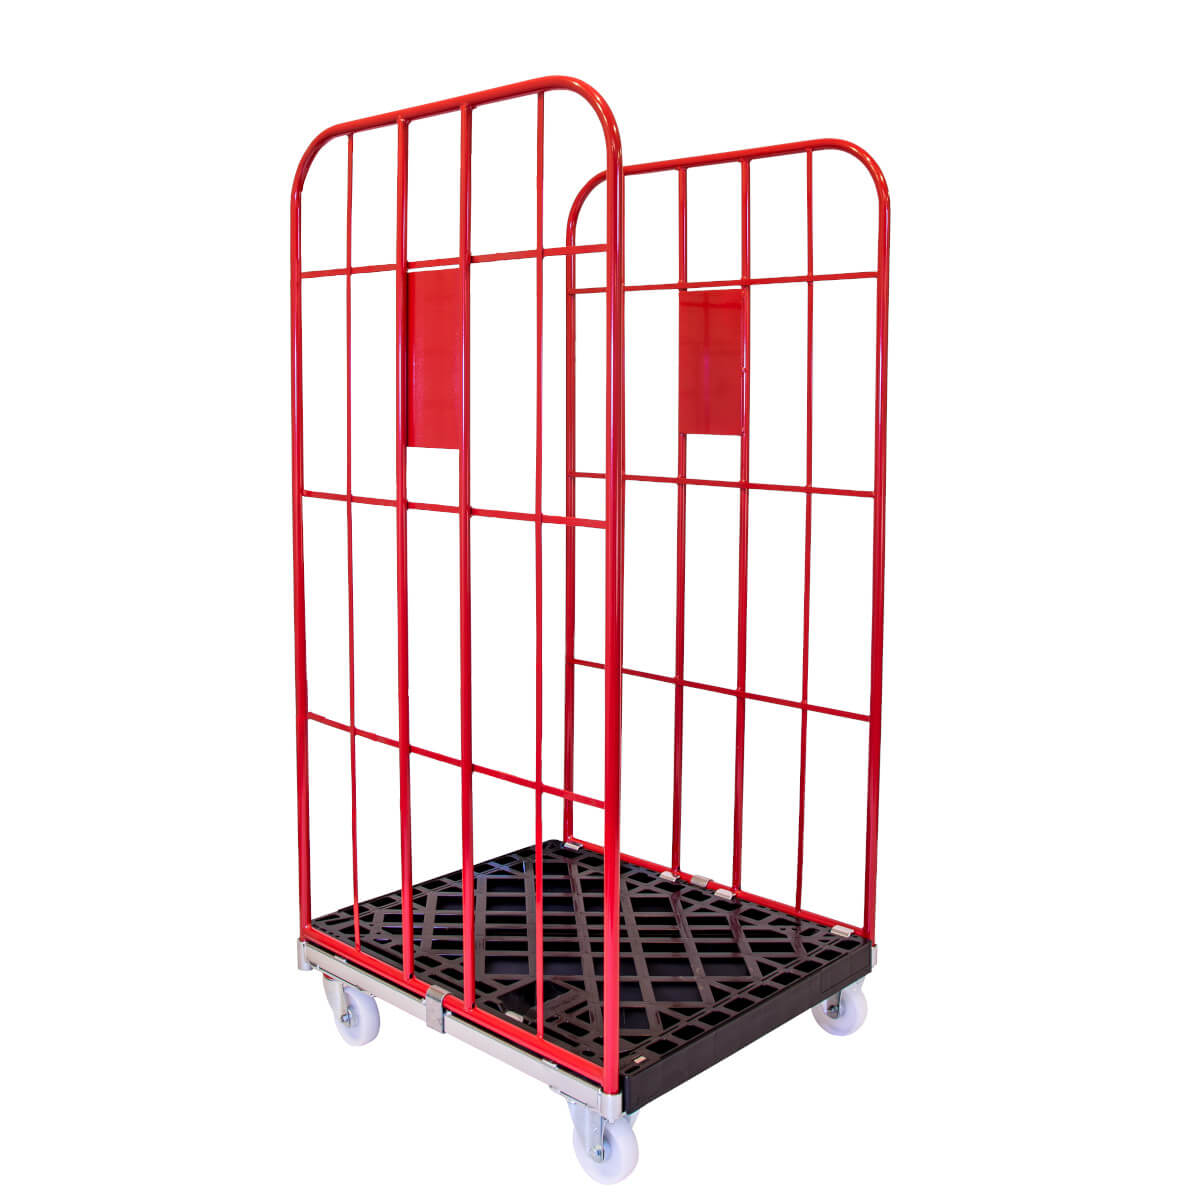 Rollbehälter nestbar 1350 mm mit schwarzer Kunststoffplatte und roten Gitterwänden